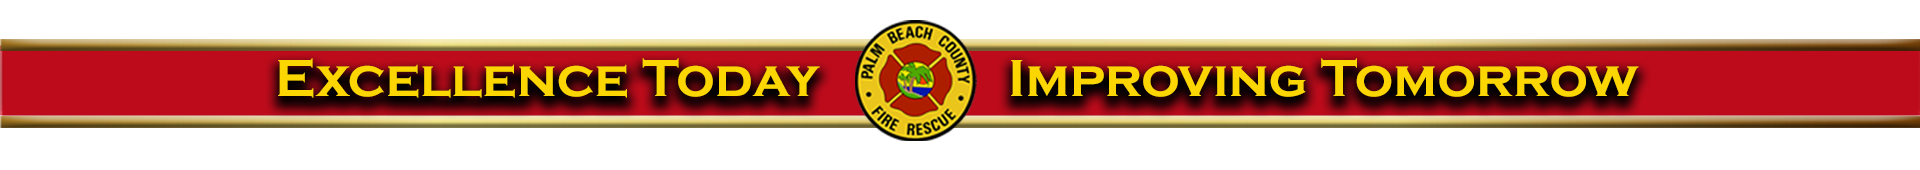 Fire Department logo banner